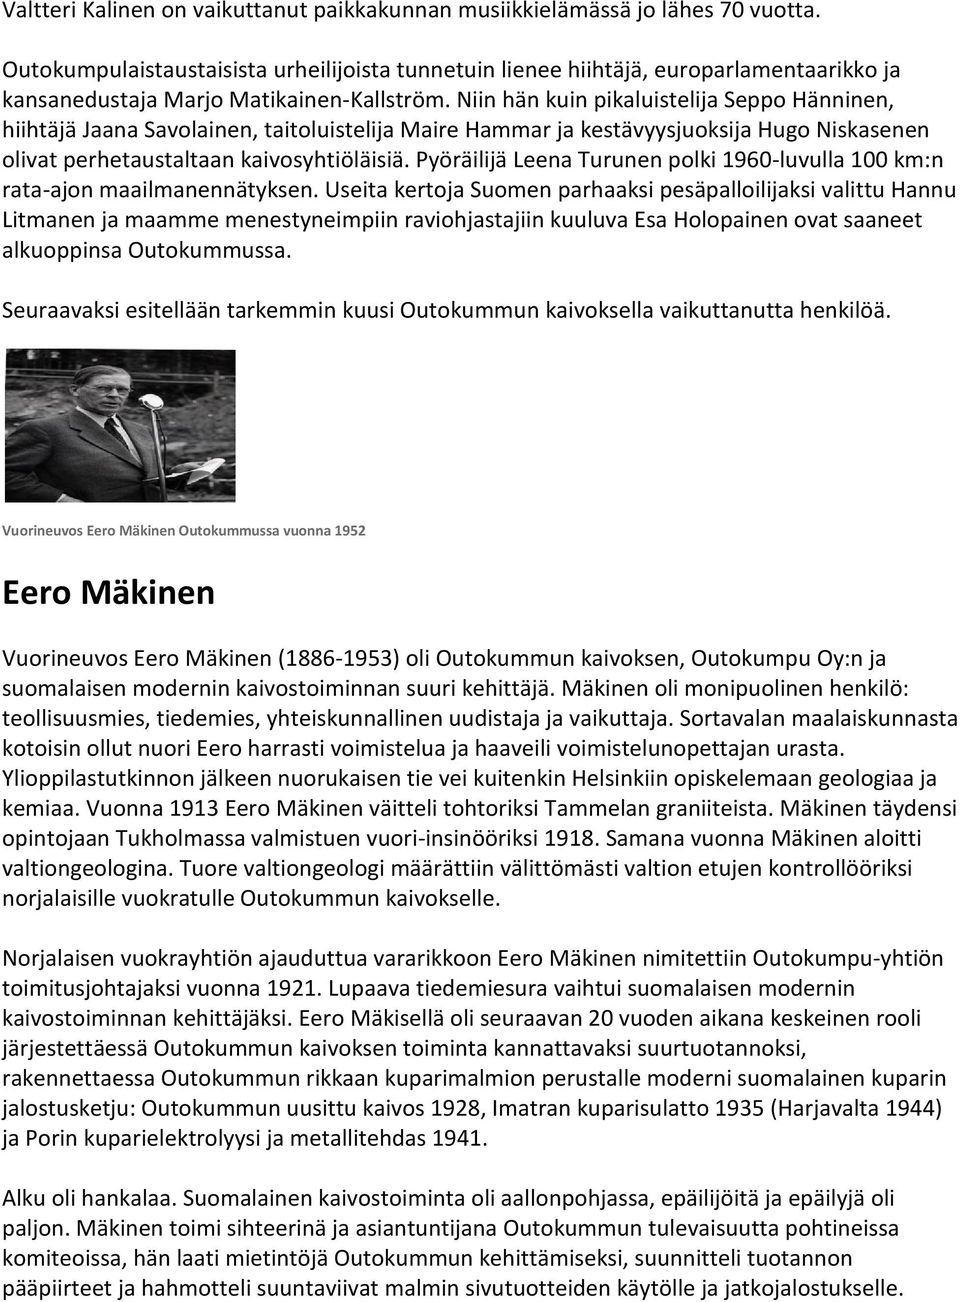 Niin hän kuin pikaluistelija Seppo Hänninen, hiihtäjä Jaana Savolainen, taitoluistelija Maire Hammar ja kestävyysjuoksija Hugo Niskasenen olivat perhetaustaltaan kaivosyhtiöläisiä.